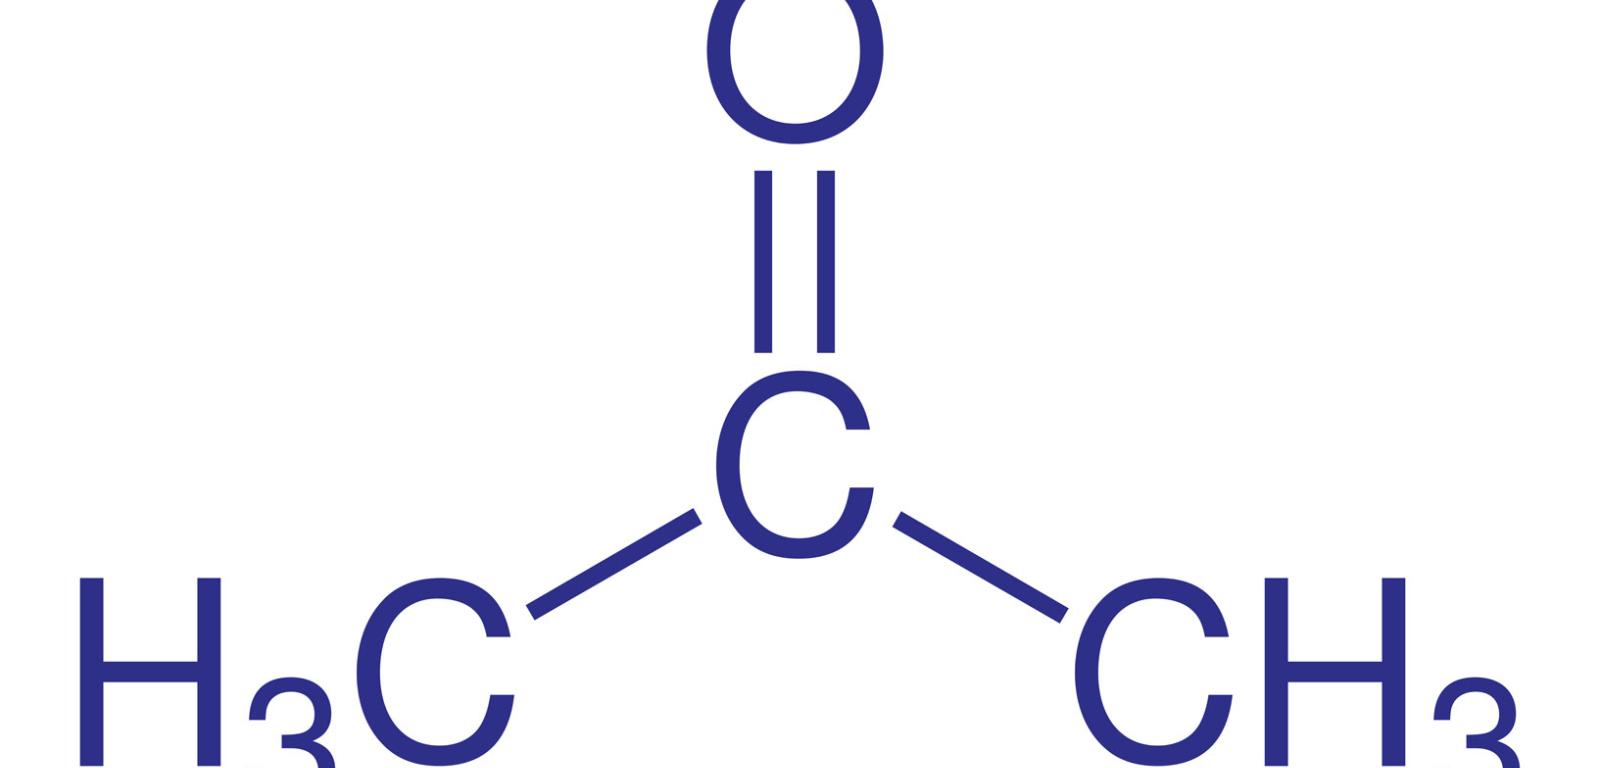 Polarne i niepolarne fragmenty cząsteczki acetonu pozwalają mu mieszać się i z olejem, i z wodą.